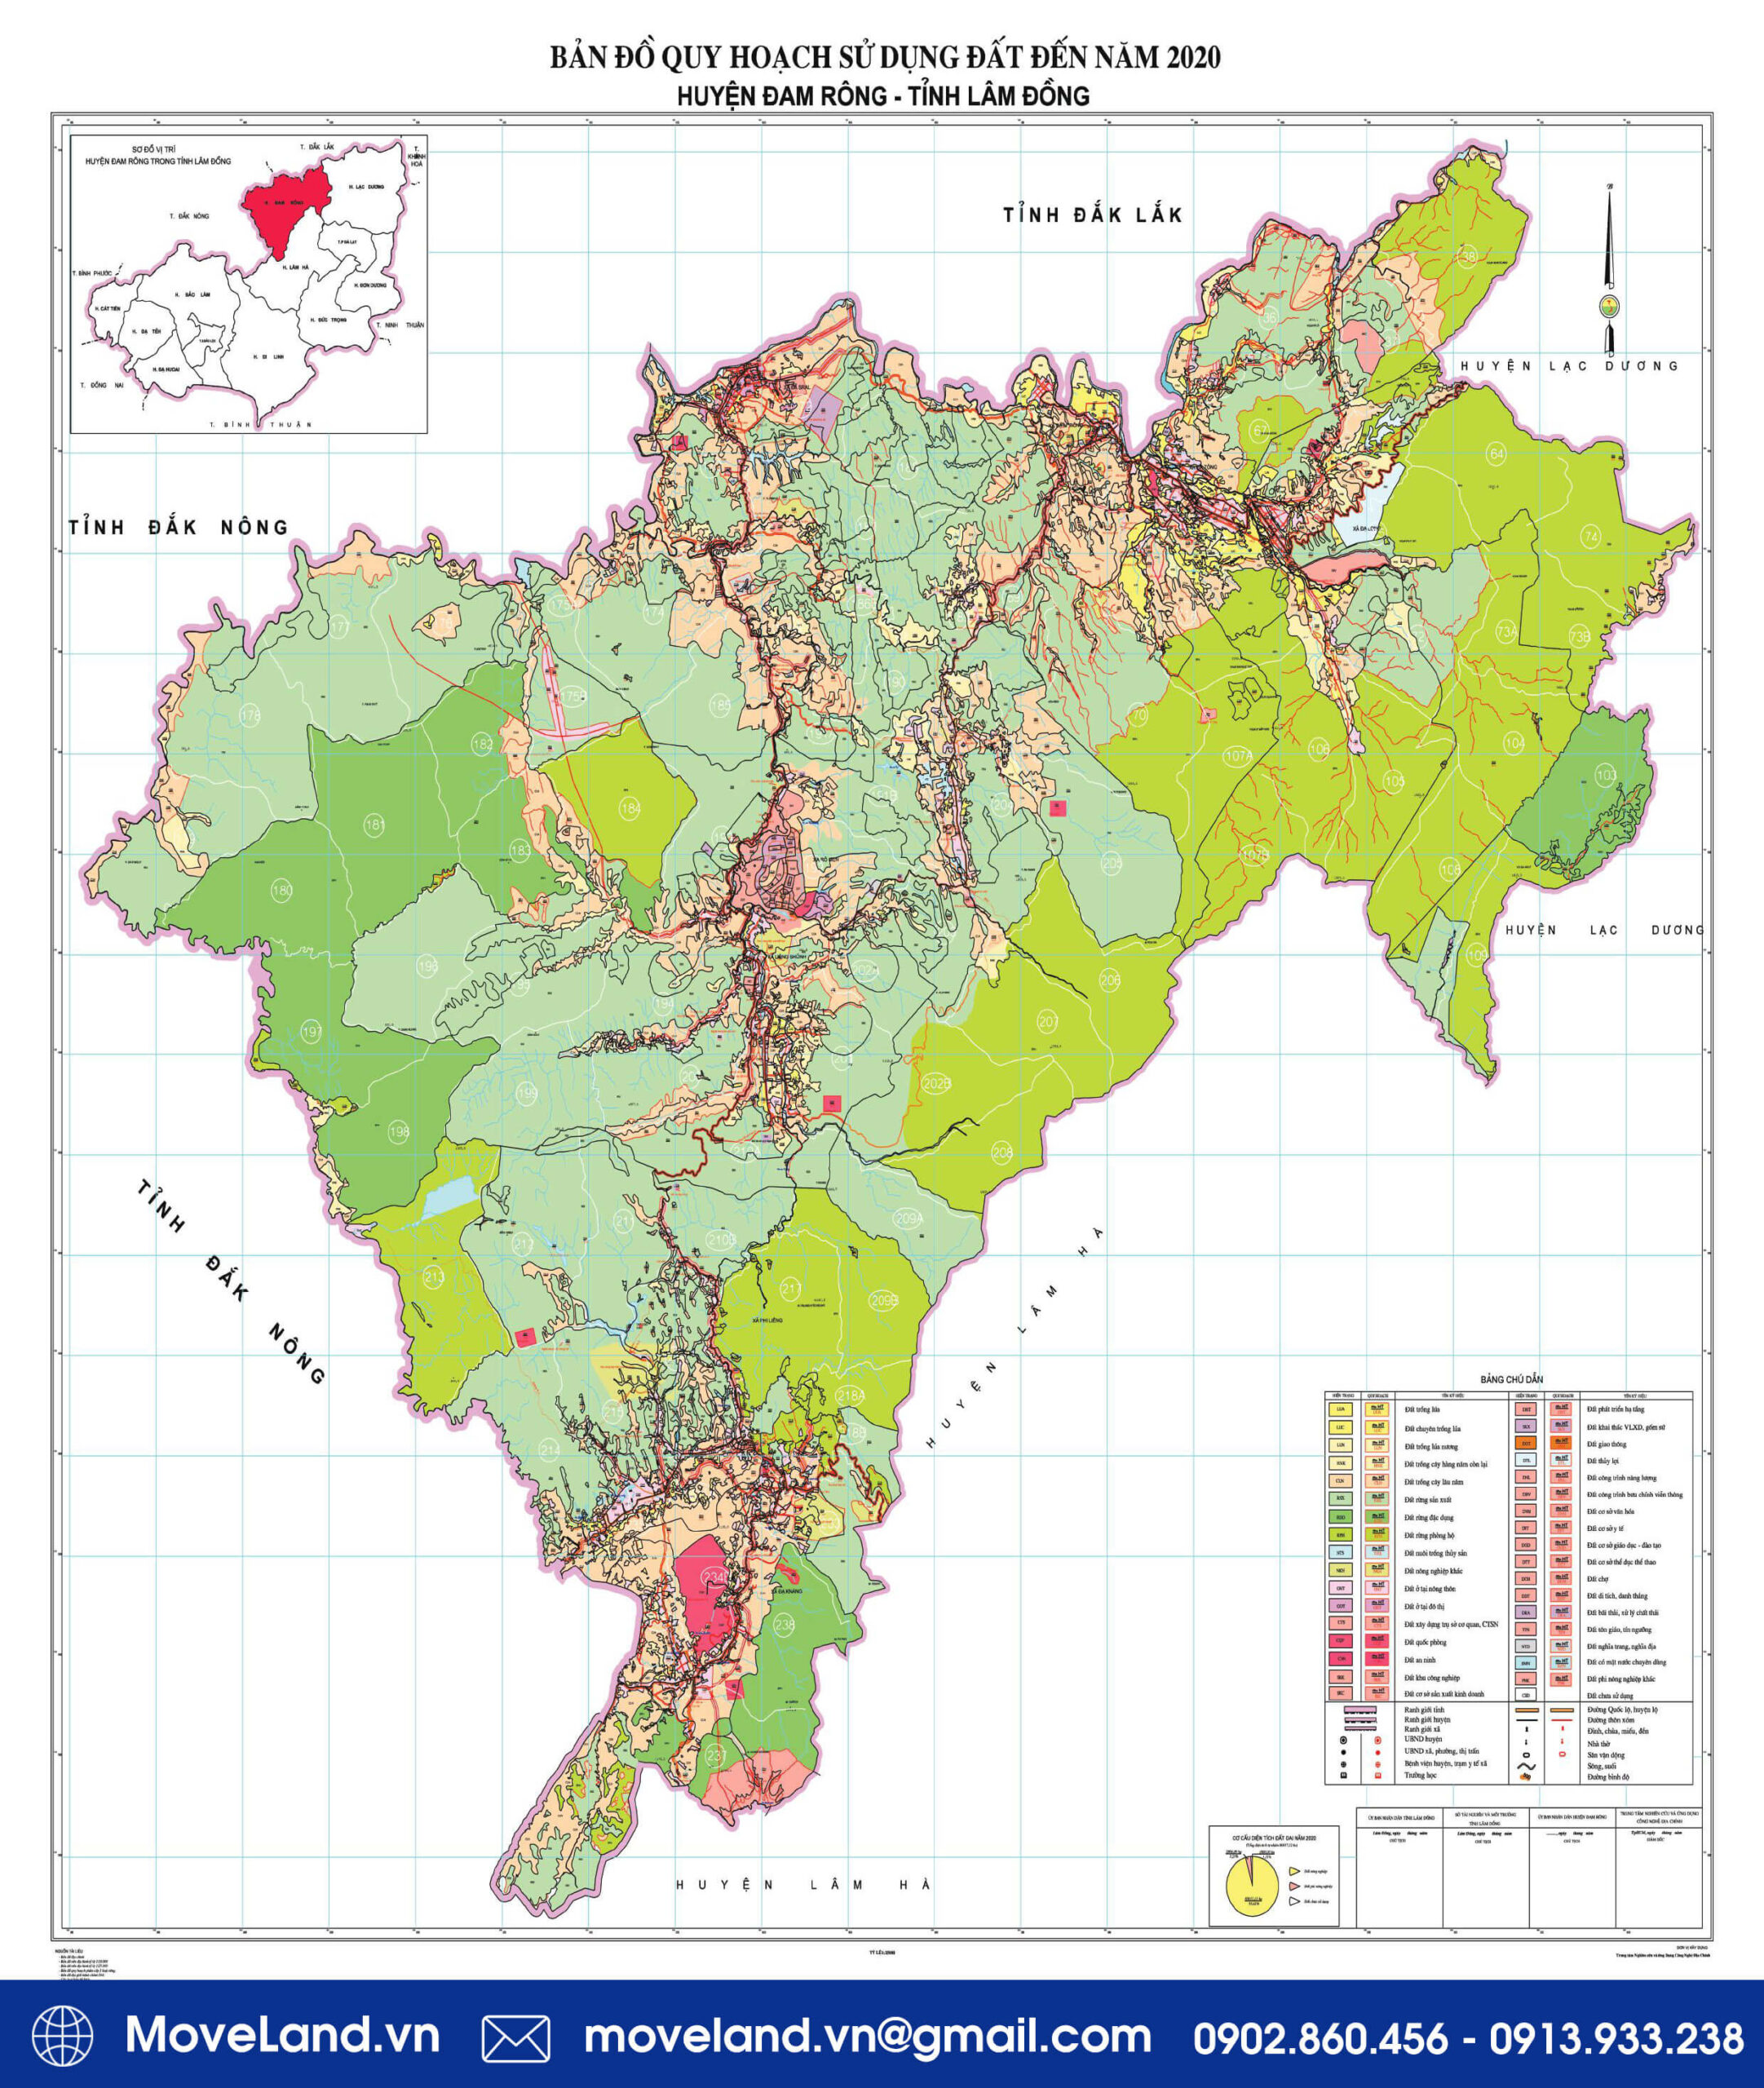 Bản đồ quy hoạch sử dụng đất huyện Đam Rông tỉnh Lâm Đồng